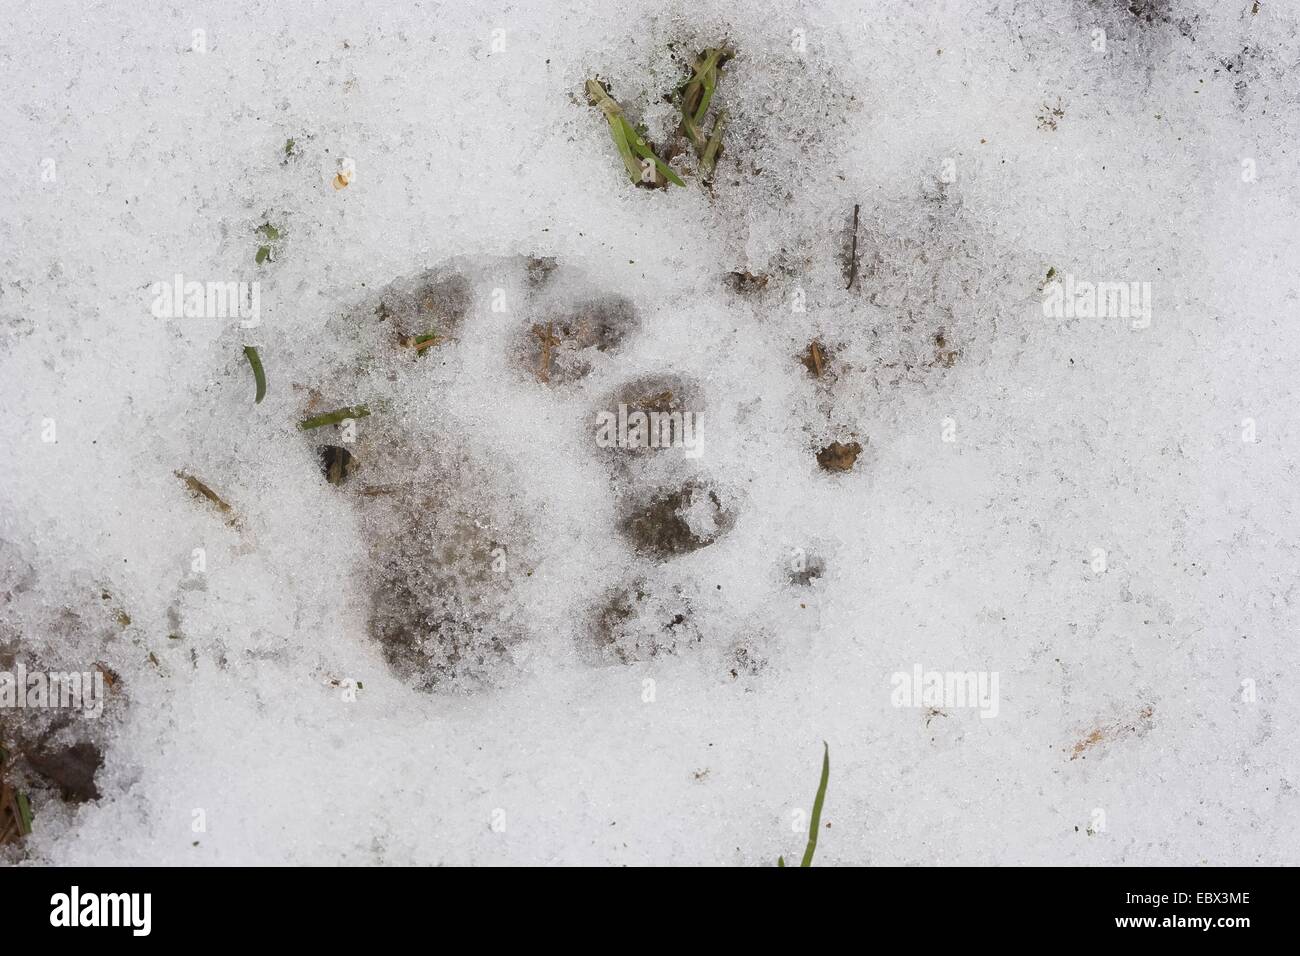 Blaireau Eurasien de l'Ancien Monde, le blaireau (Meles meles), imprimer des pieds dans la neige, Allemagne Banque D'Images